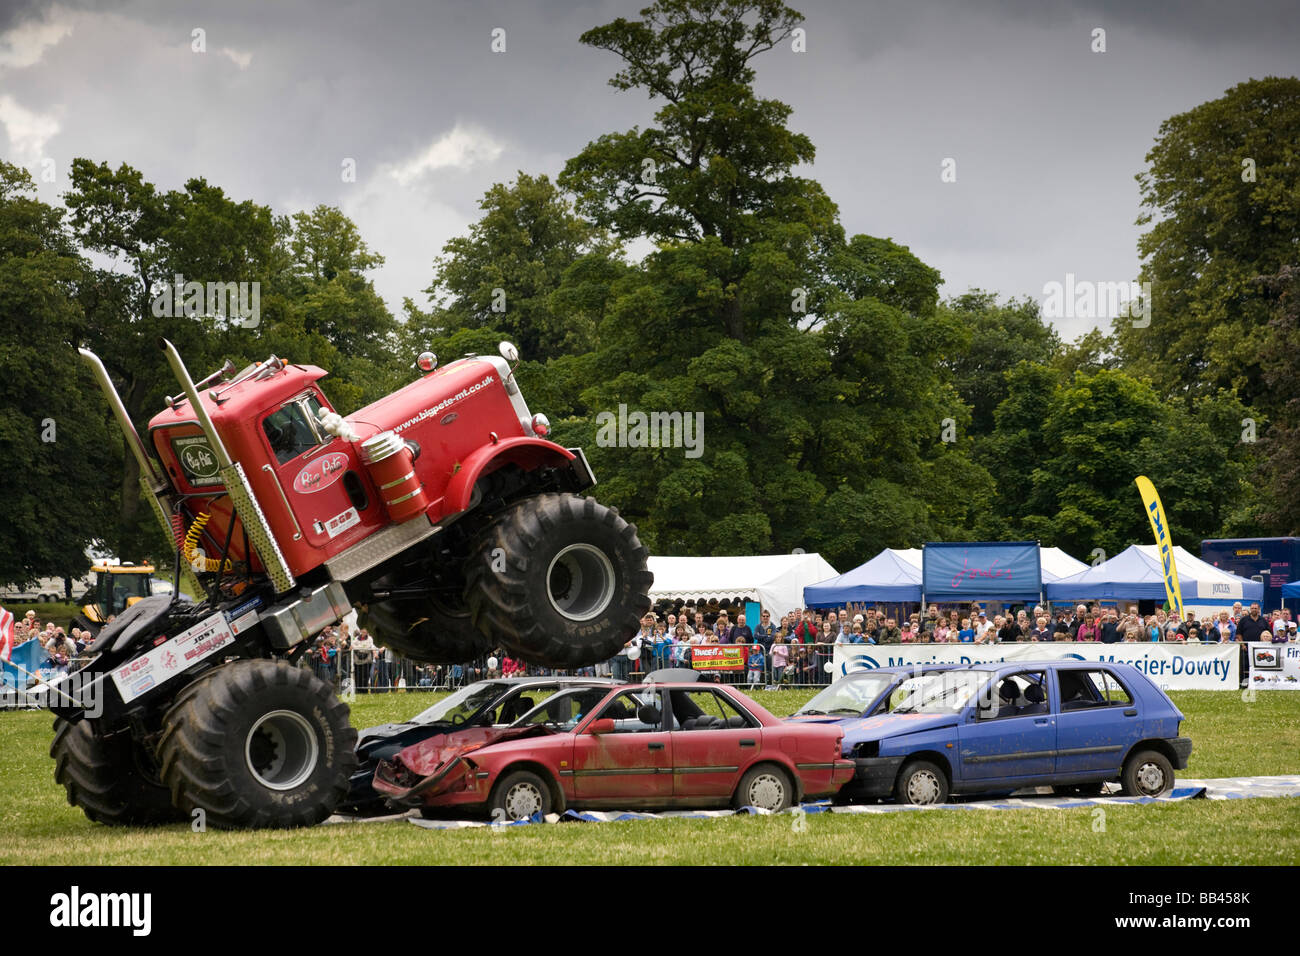 Monster trucks écrasement de vieilles voitures lors d'une foire agricole, Gloucestershire, Royaume-Uni Banque D'Images